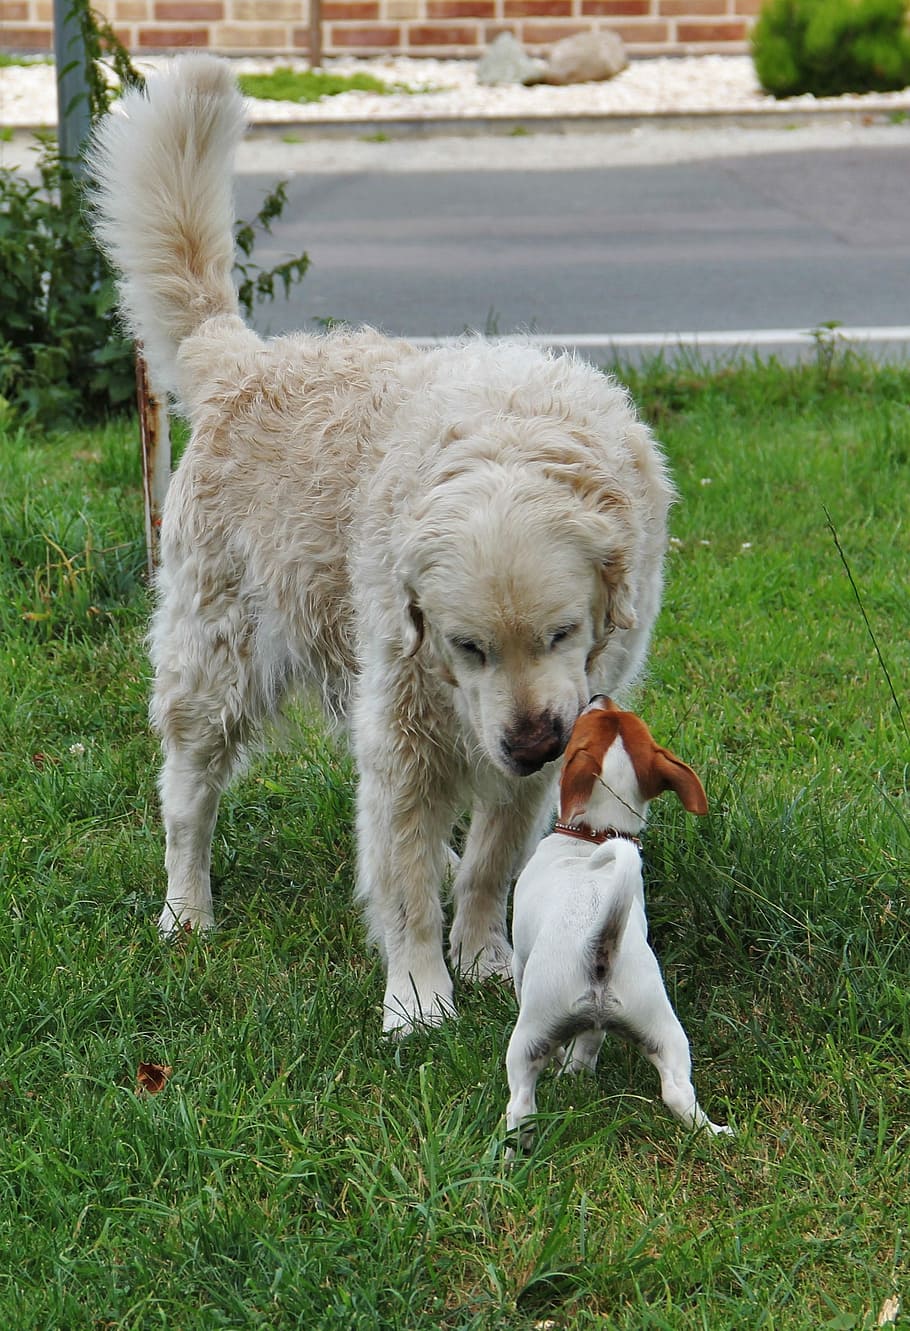 Pequeño, dos perros, pequeño y grande, bienvenido, grande y pequeño, cachorro, jack russel terrier, golden retriever, mascotas, perros